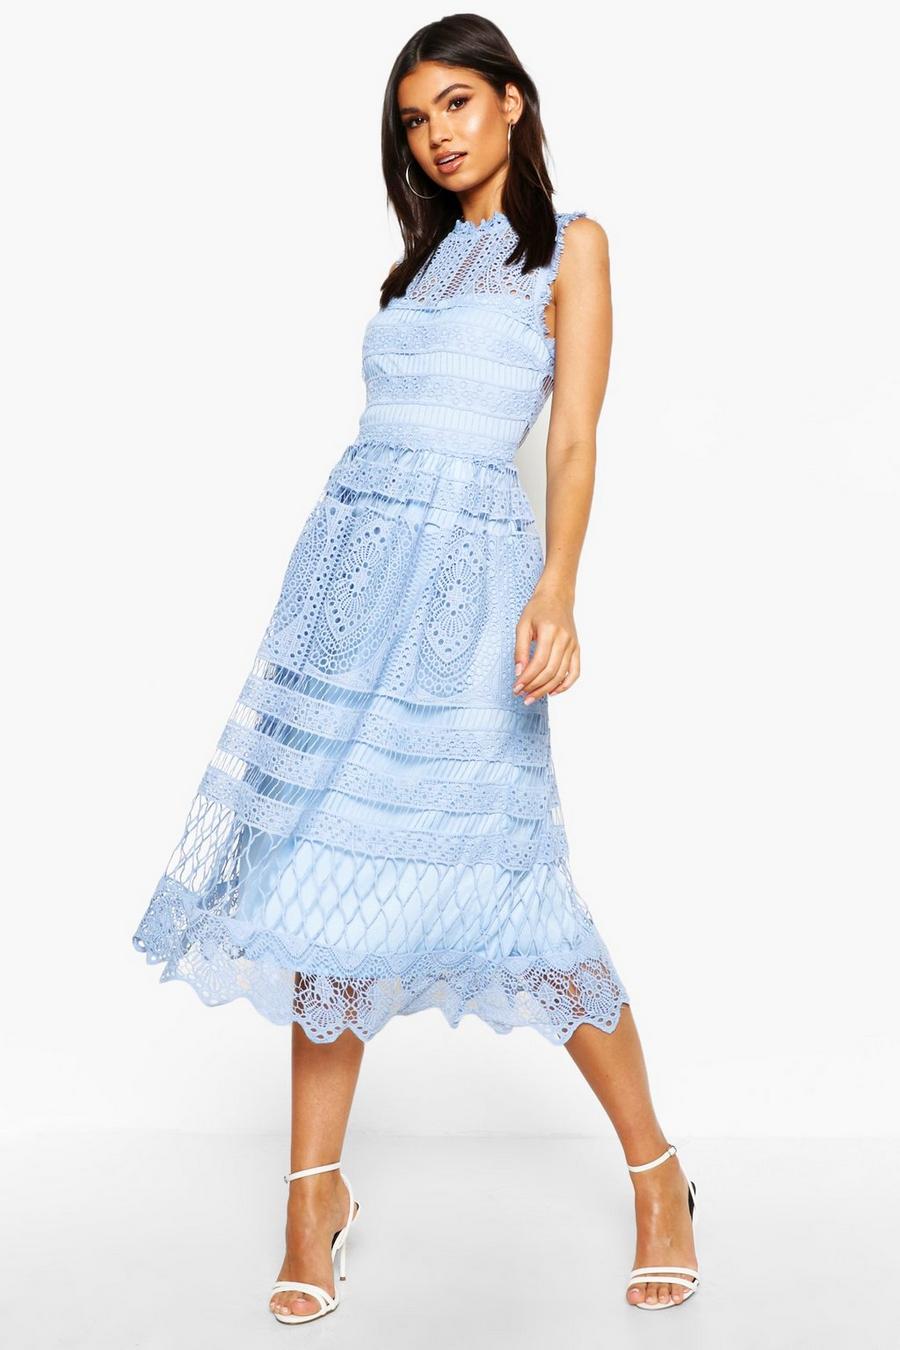 Sky blue Boutique Lace Skater Bridesmaid Dress